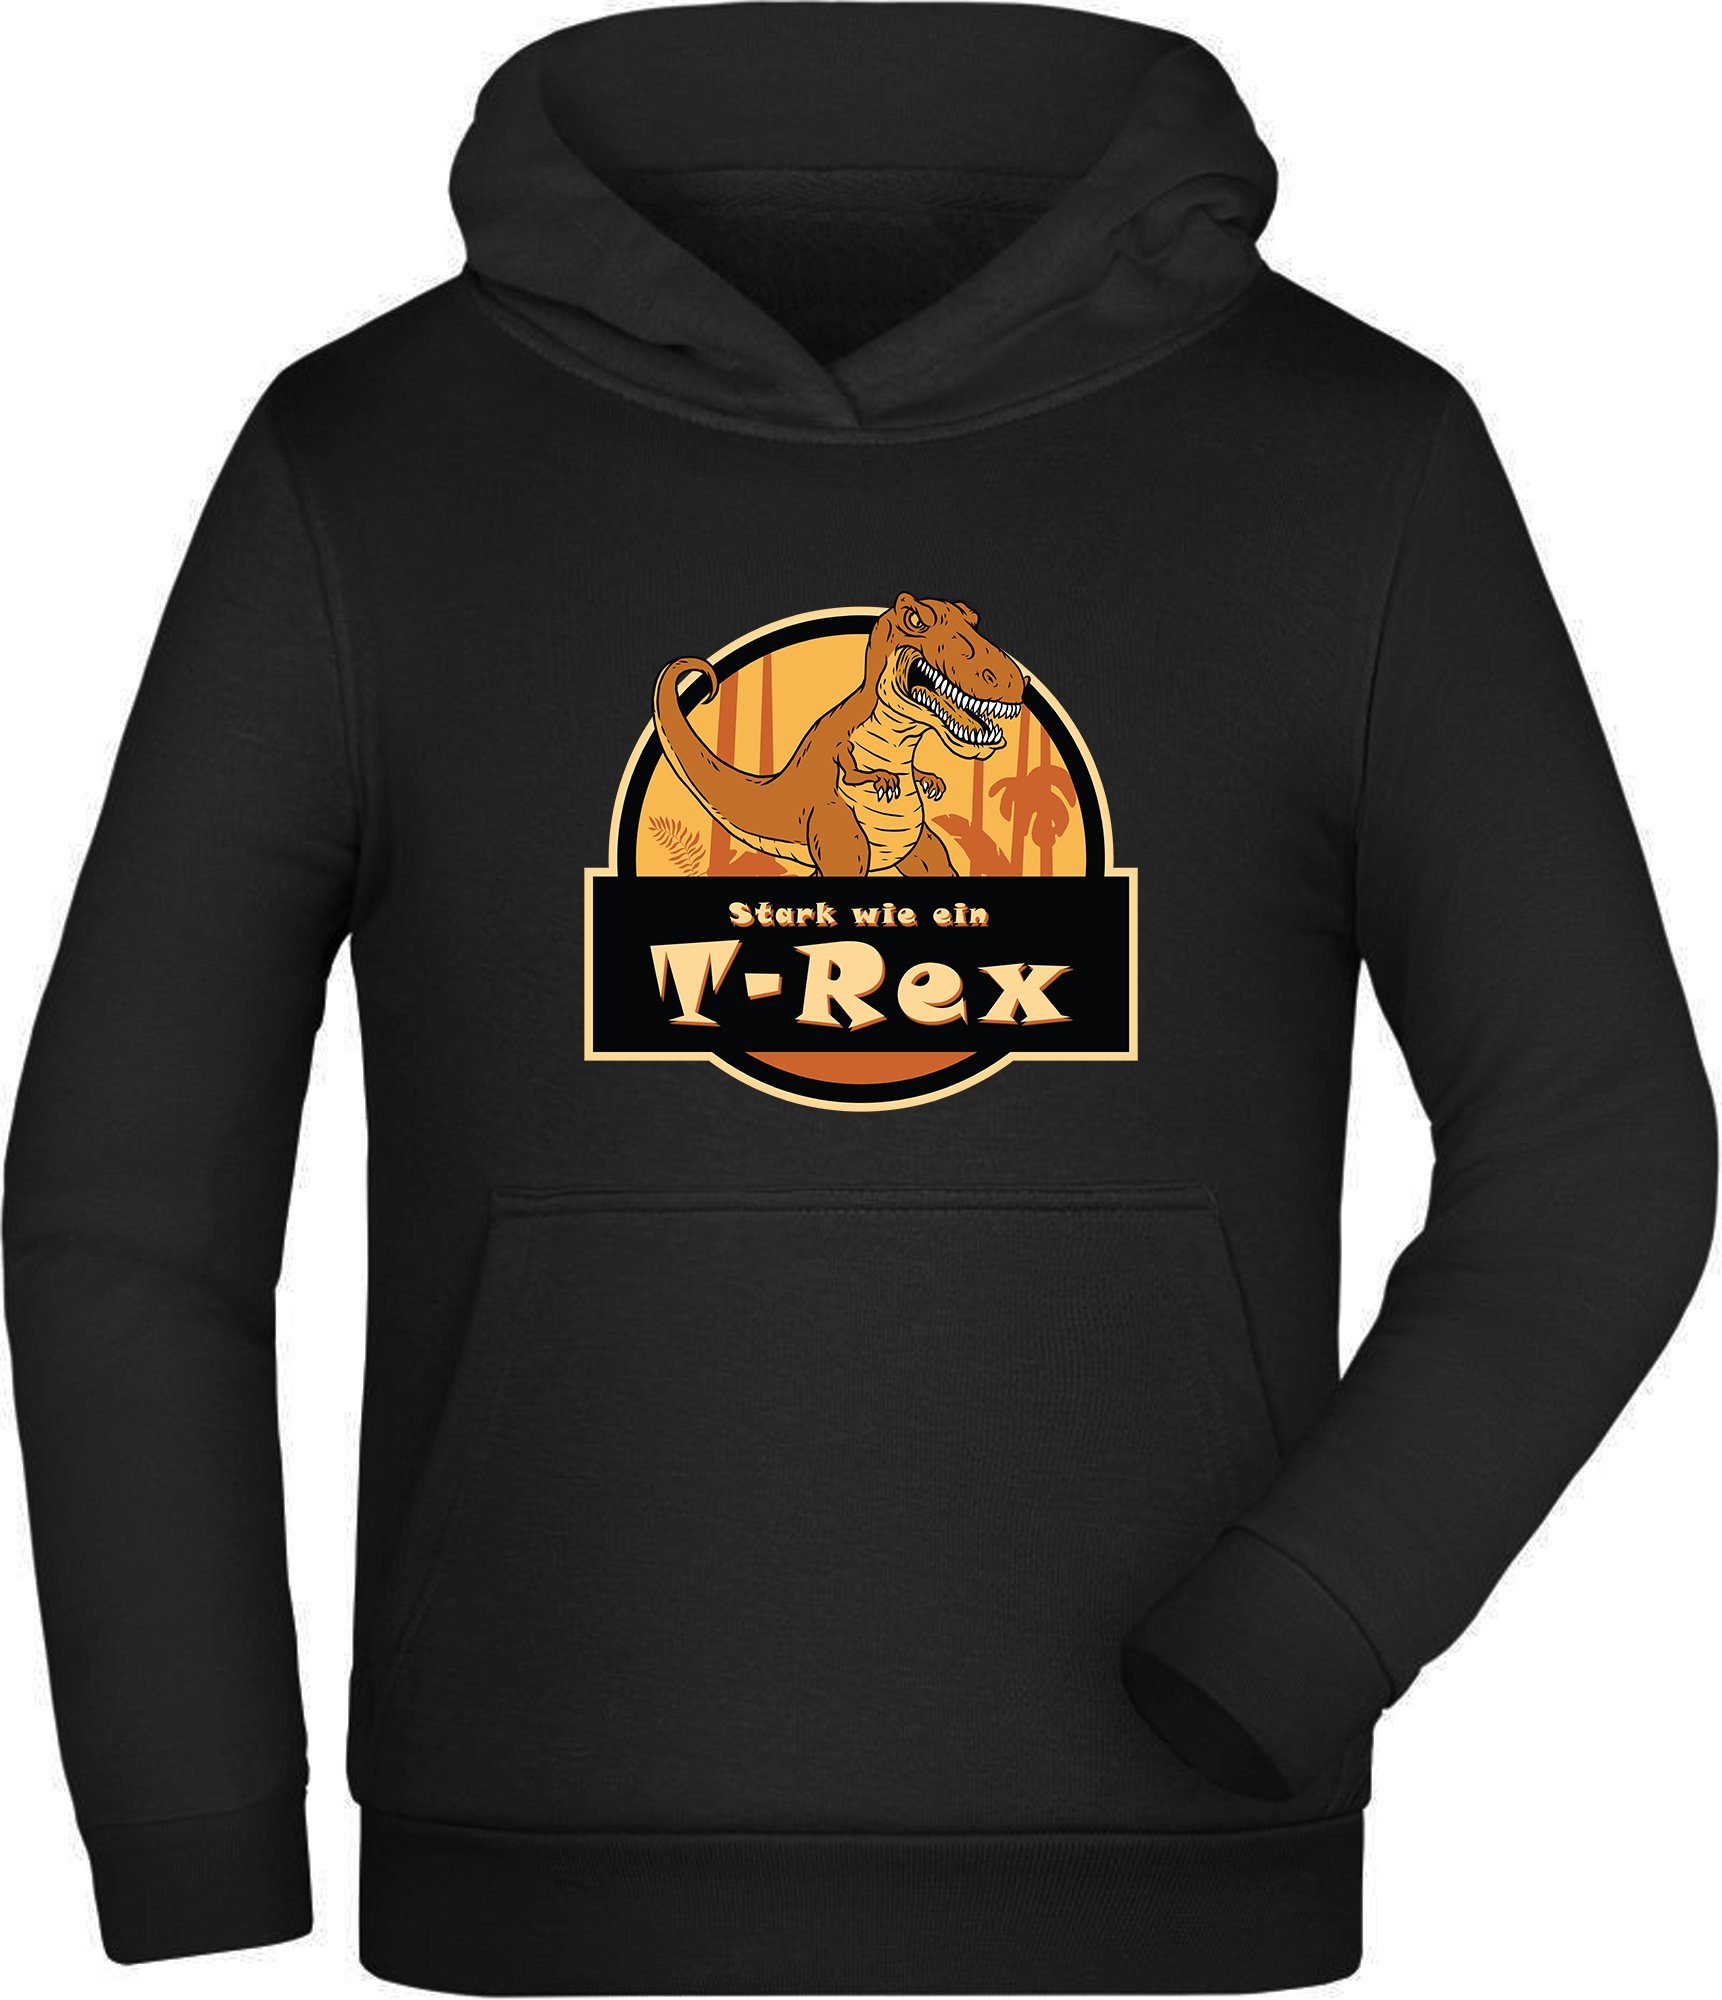 wie Stark Hoodie Kapuzen Kinder Aufdruck, - MyDesign24 ein mit T-Rex i91 Sweatshirt Kapuzensweater